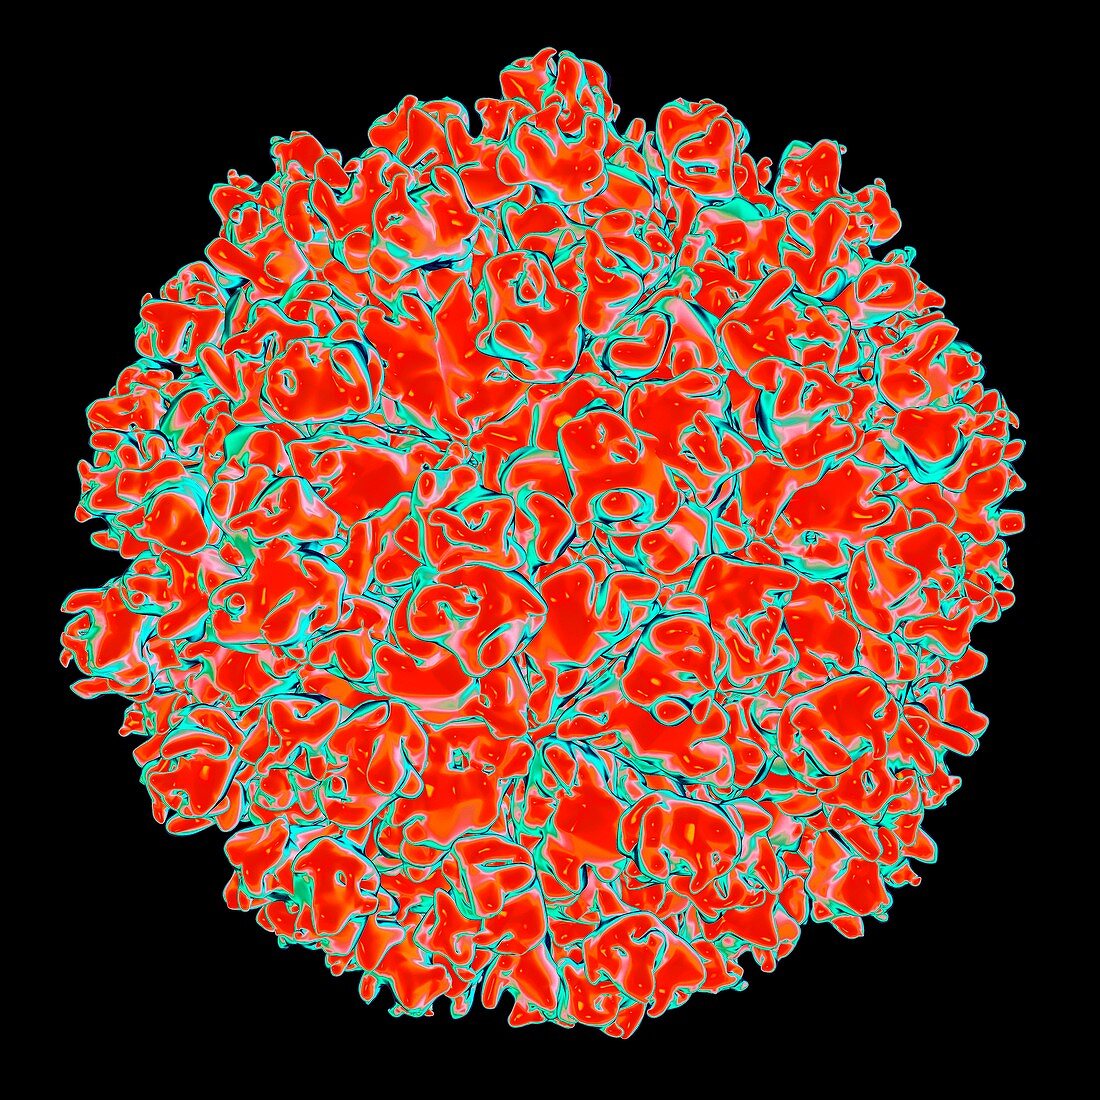 Hepatitis E virus,artwork